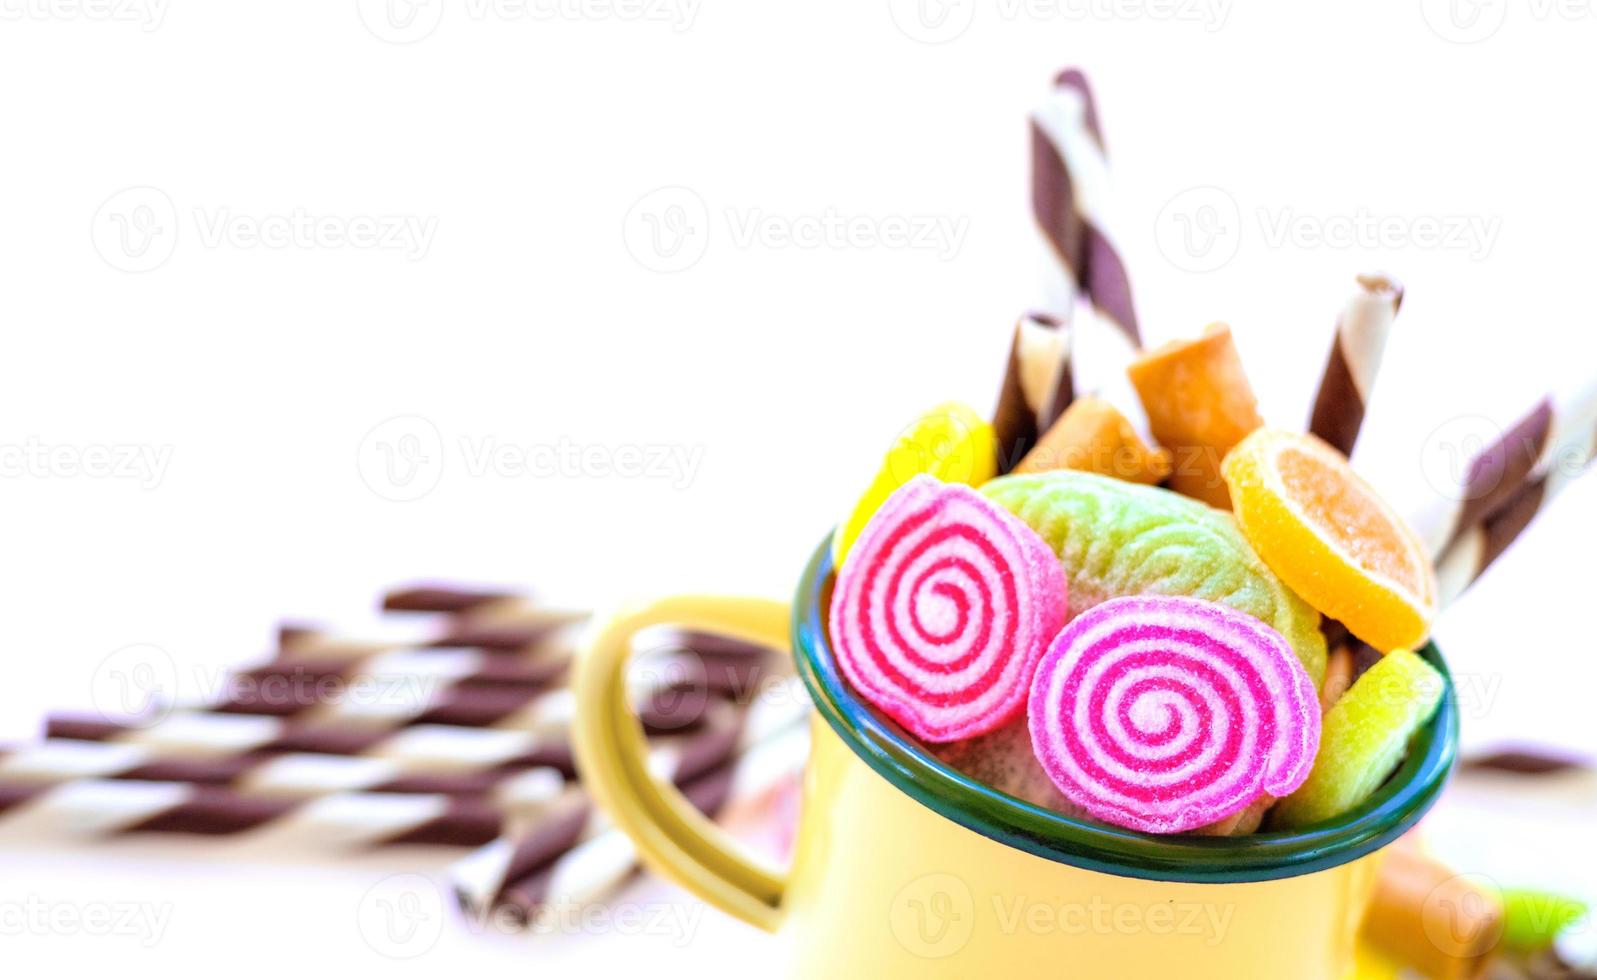 dulces coloridos y caramelos de azúcar en un fondo blanco foto